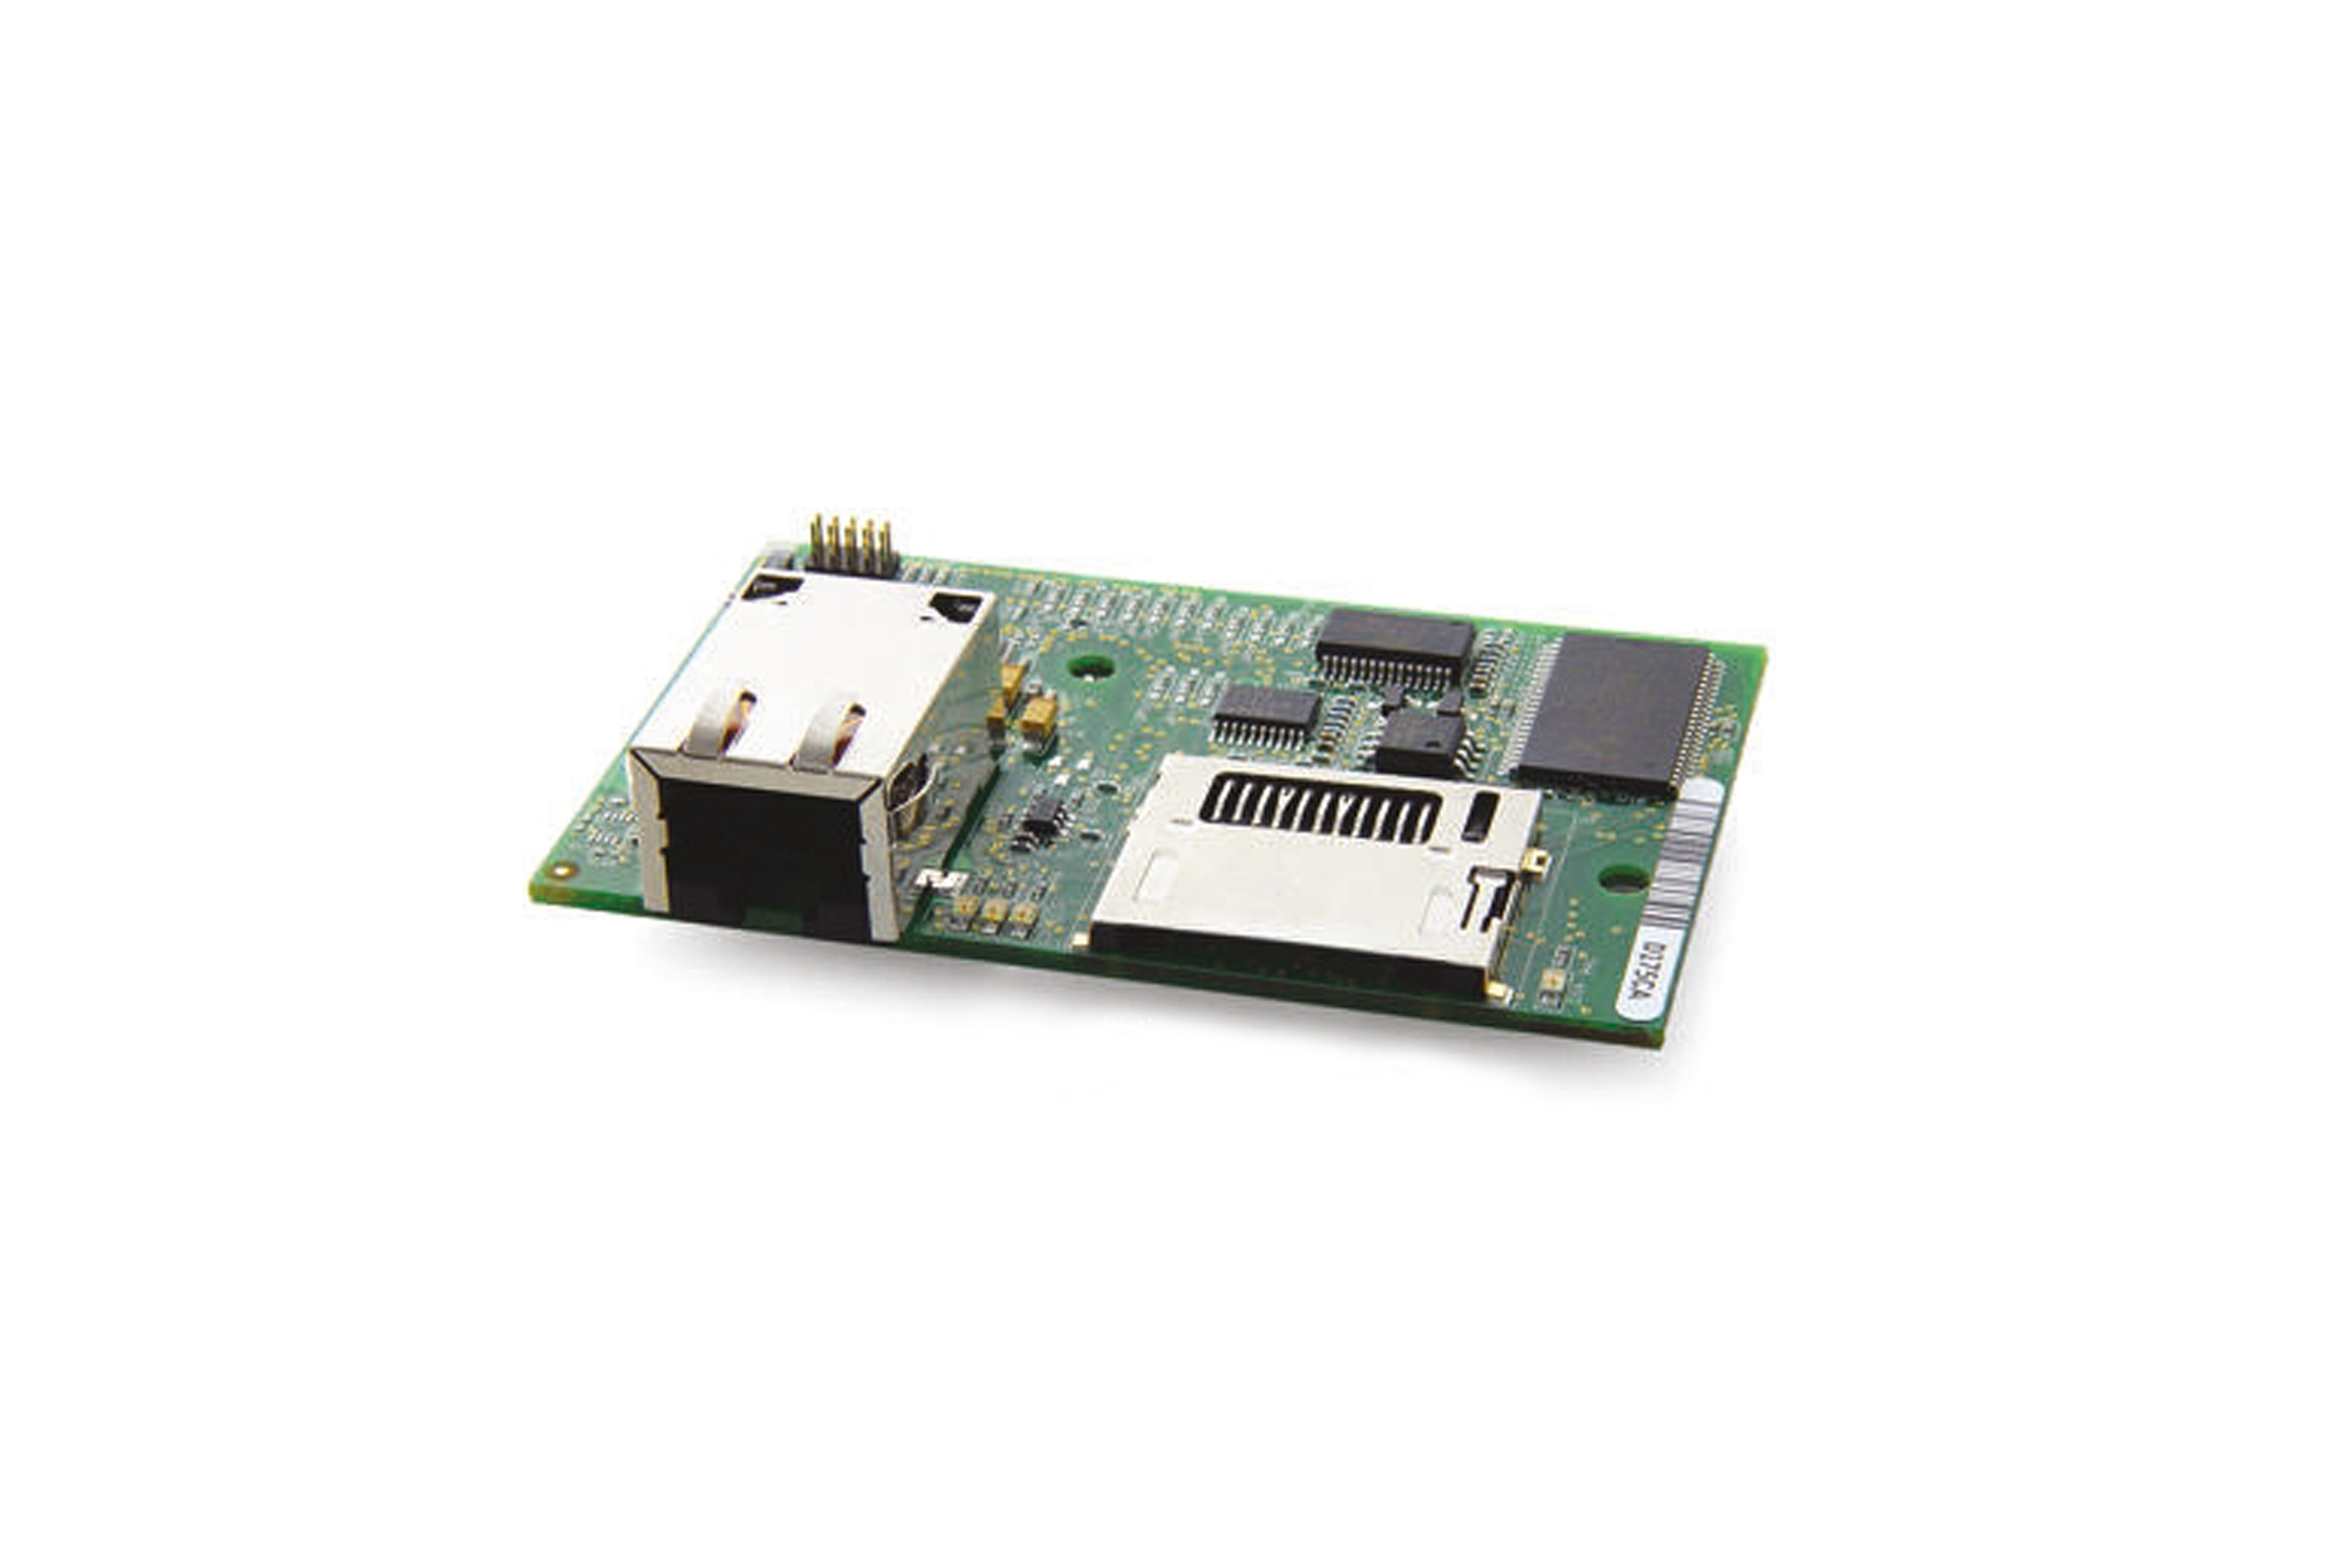 Rcm4300 Core Module W/Sd Card I/F